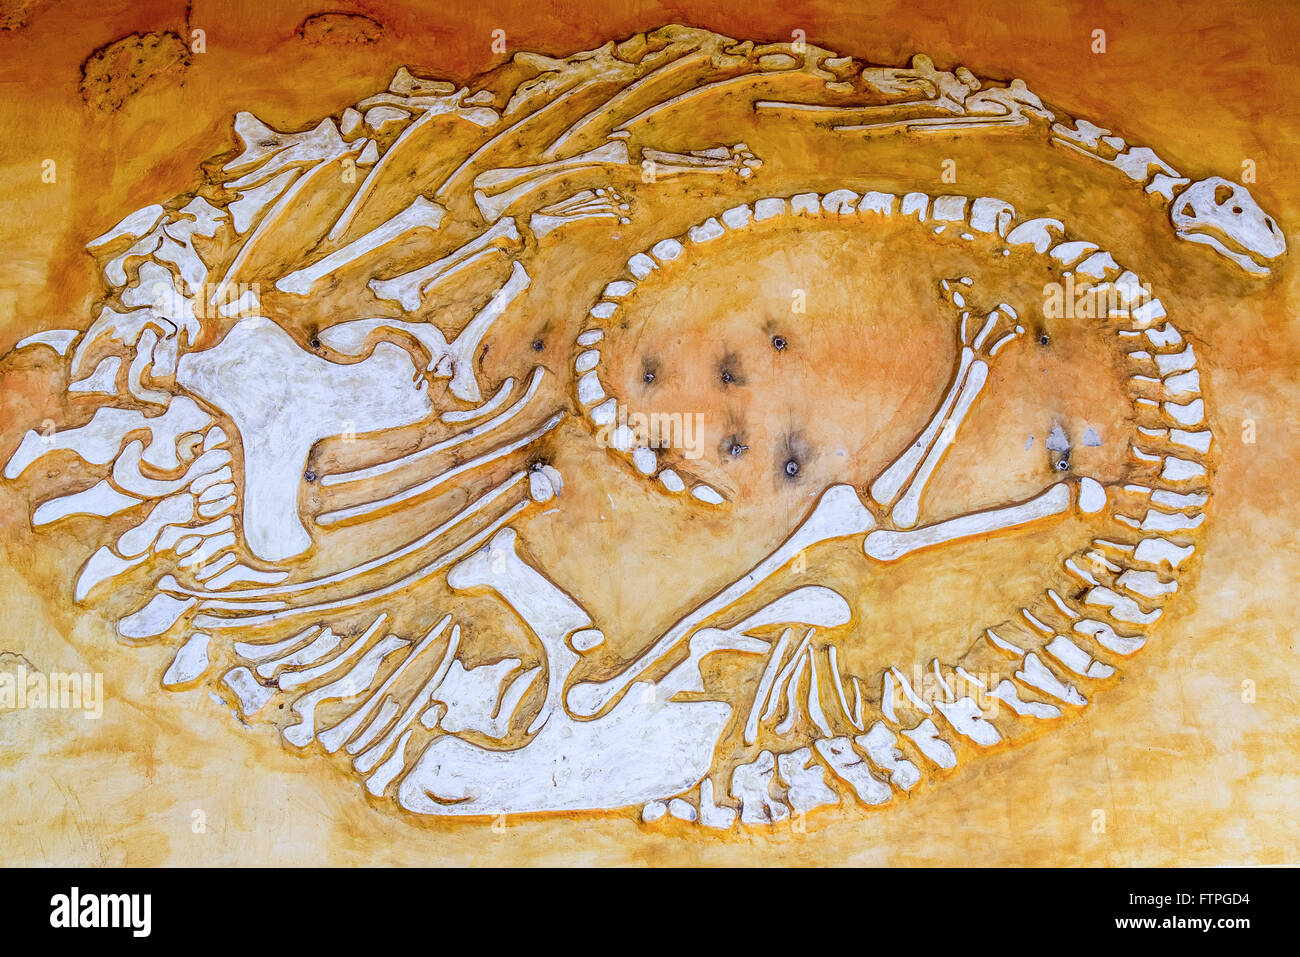 Représentation des os de Dinosaur Museum et Centre de recherche paléontologique Banque D'Images